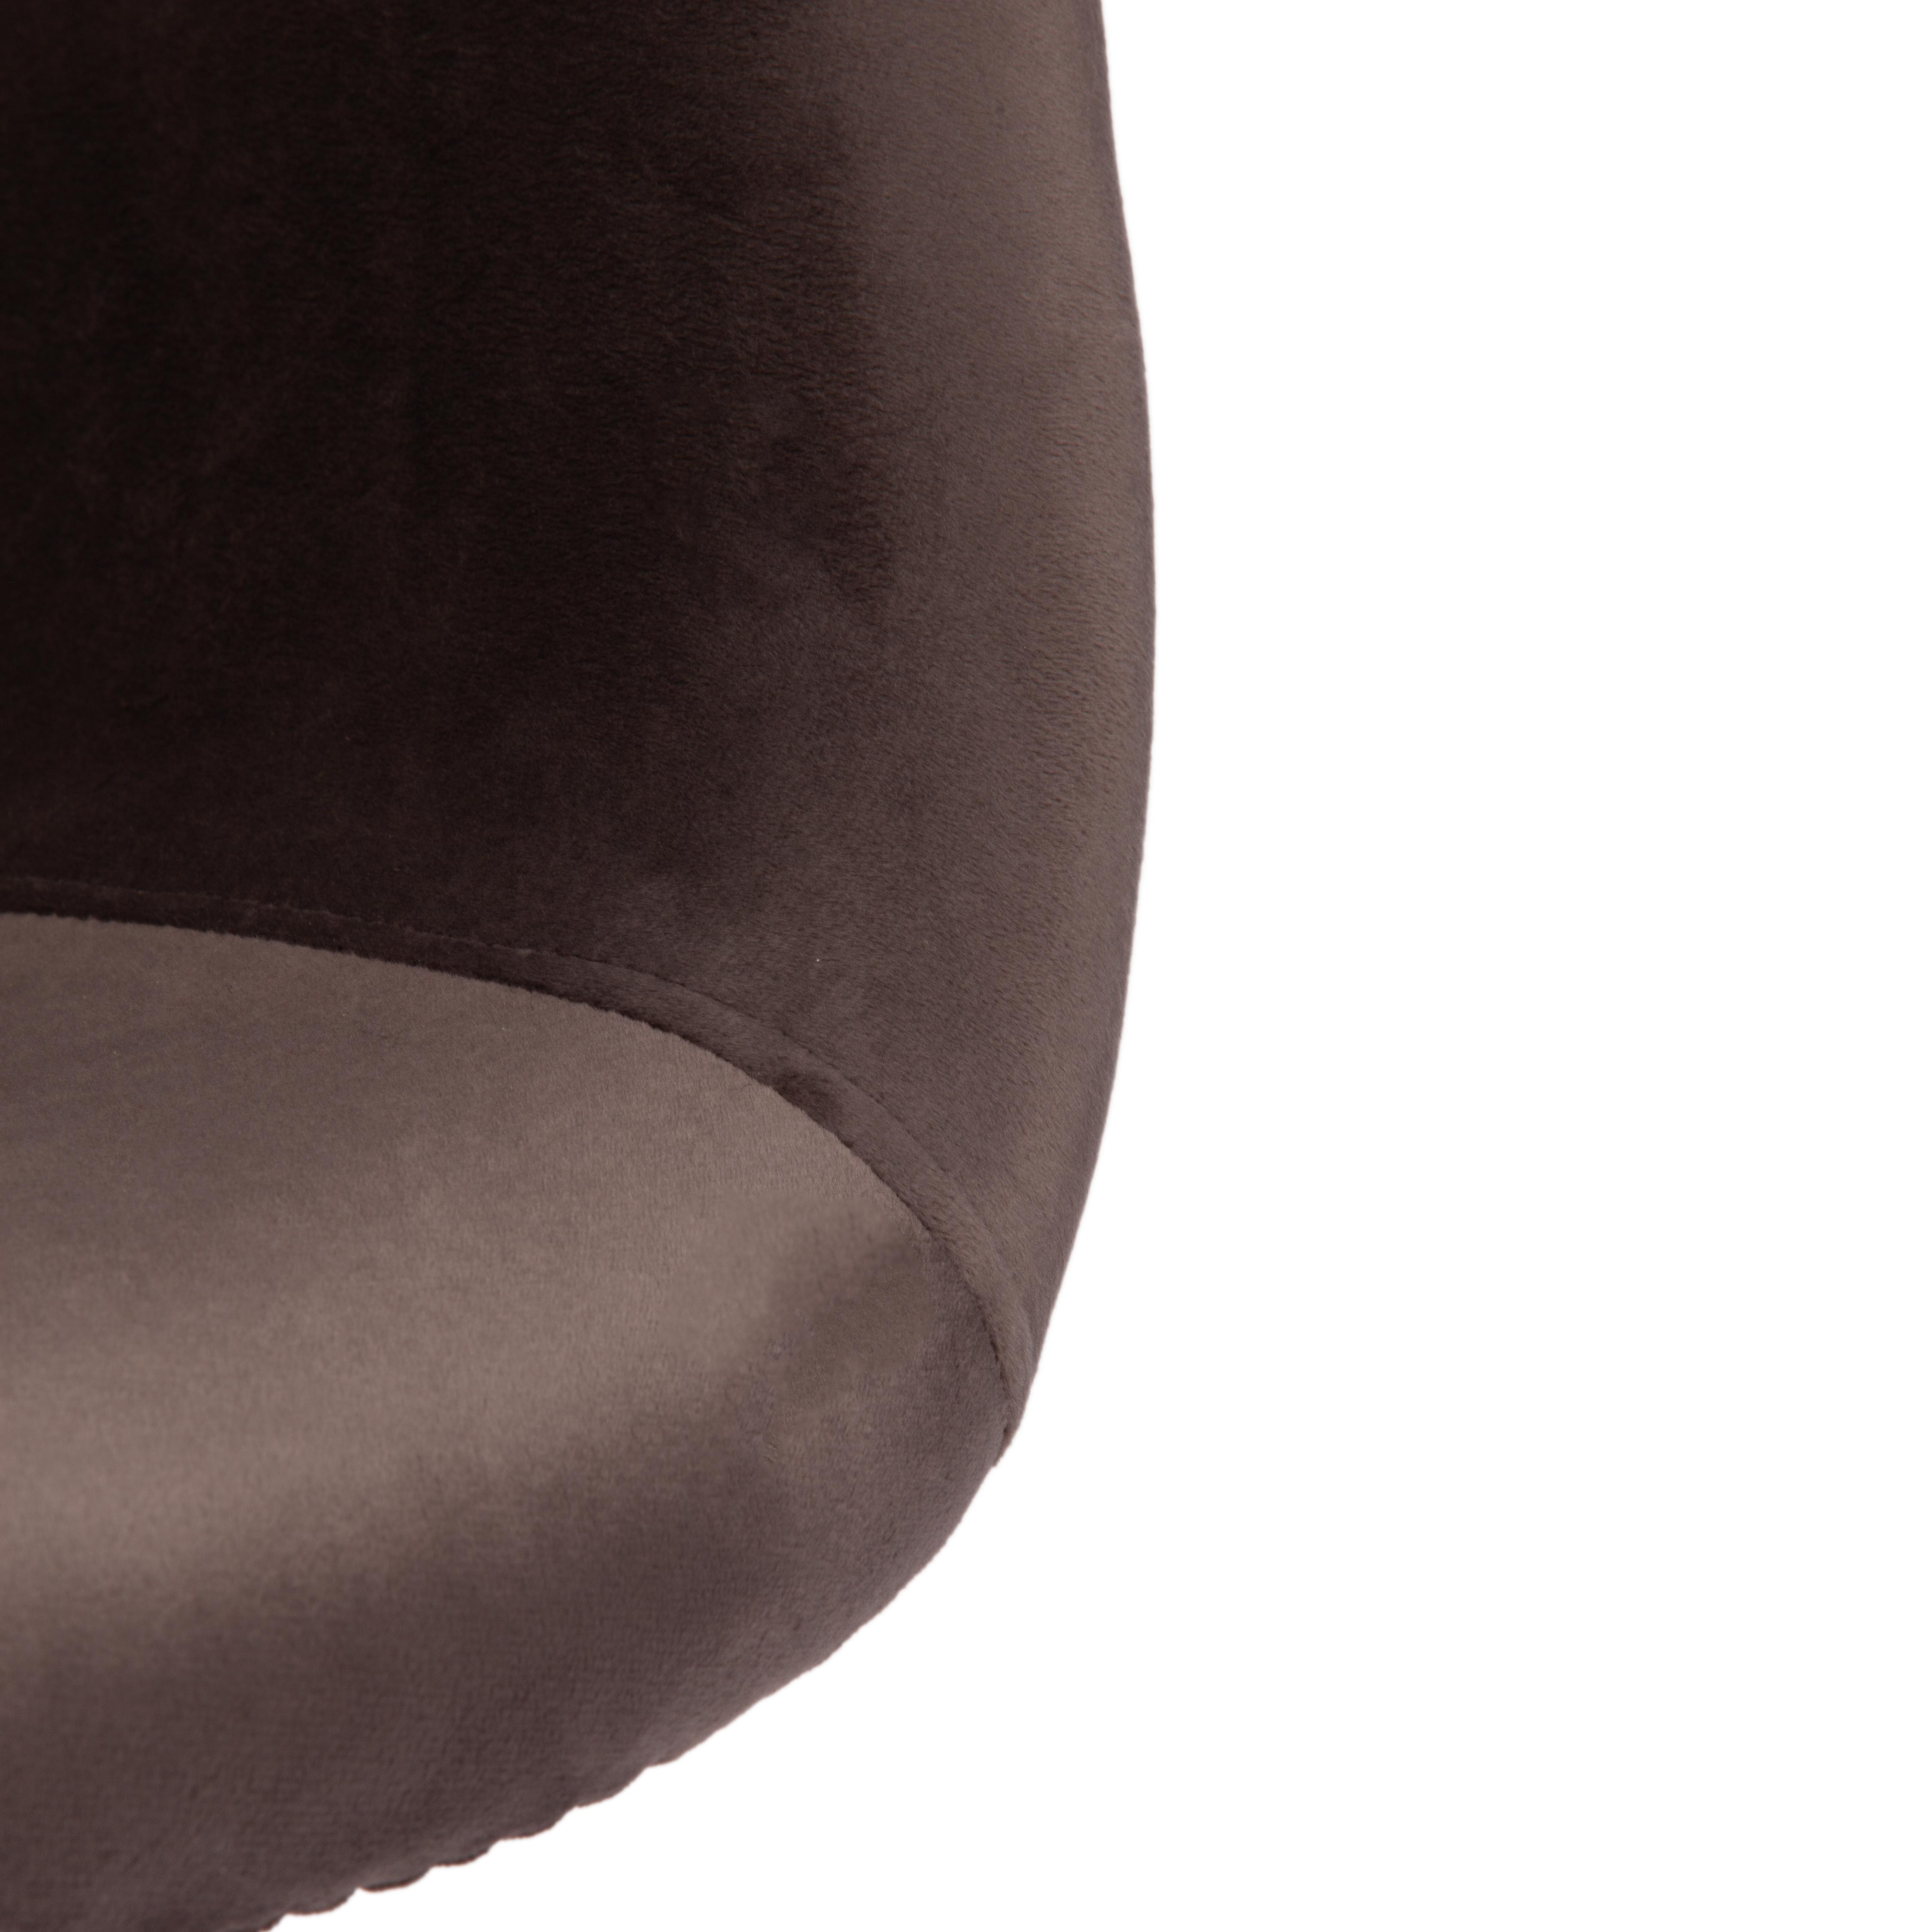 Кресло CINDY SOFT (EAMES) (mod. 101) дерево бук/металл/мягкое сиденье/ткань, 61 х 60 х 80 см , серый (HLR 24)/натуральный